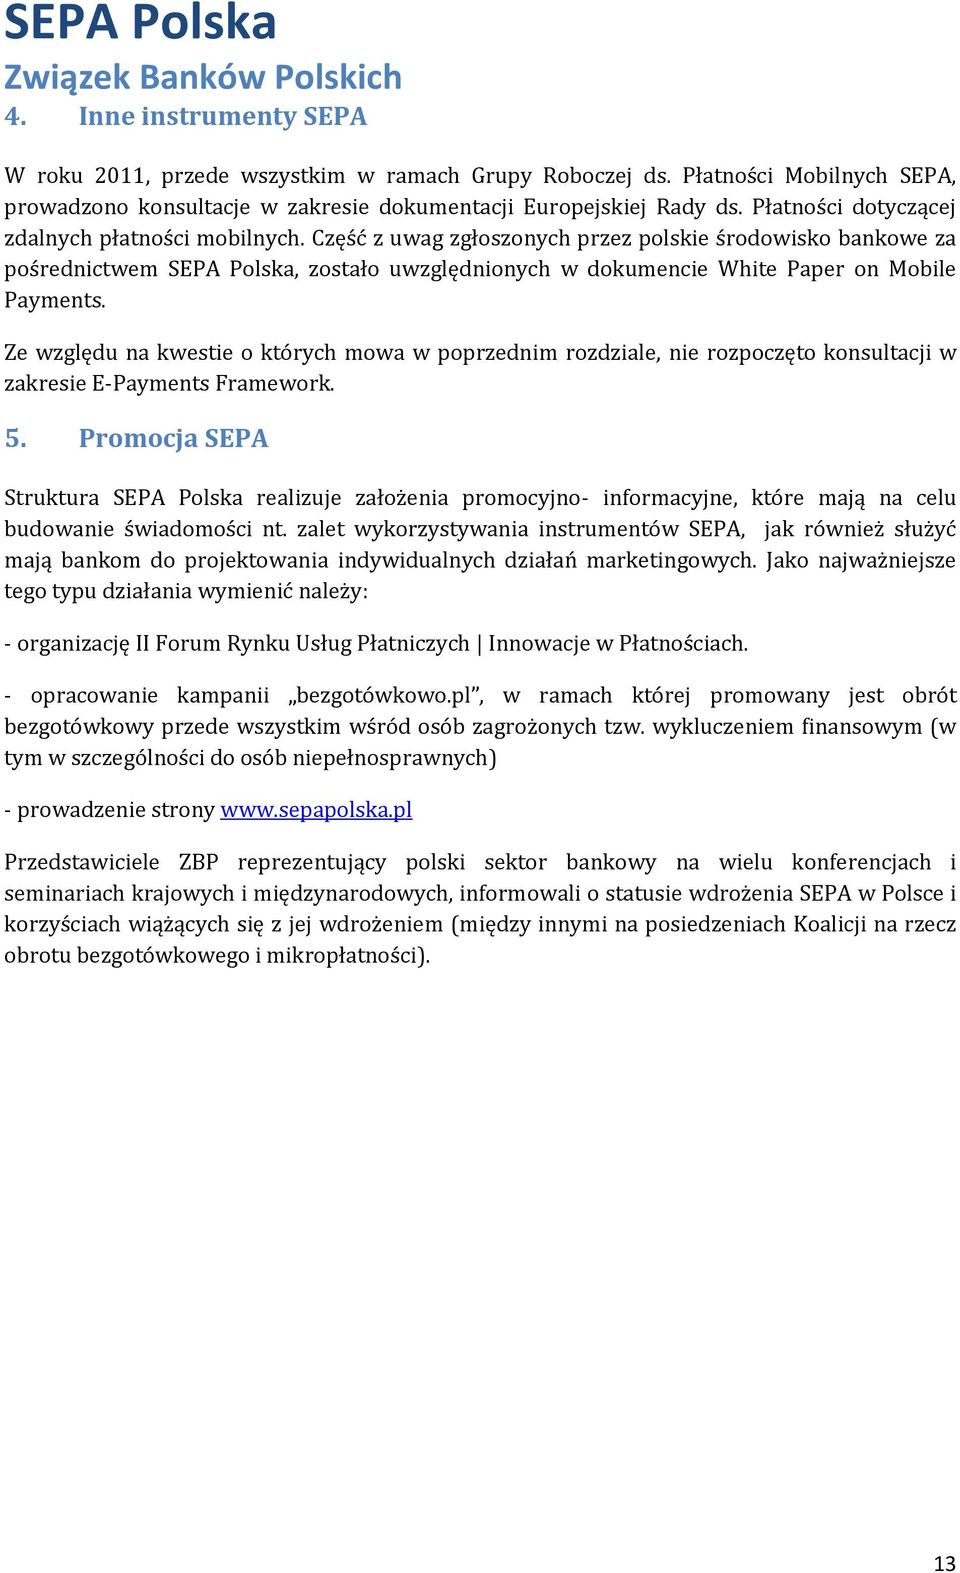 Część z uwag zgłoszonych przez polskie środowisko bankowe za pośrednictwem SEPA Polska, zostało uwzględnionych w dokumencie White Paper on Mobile Payments.